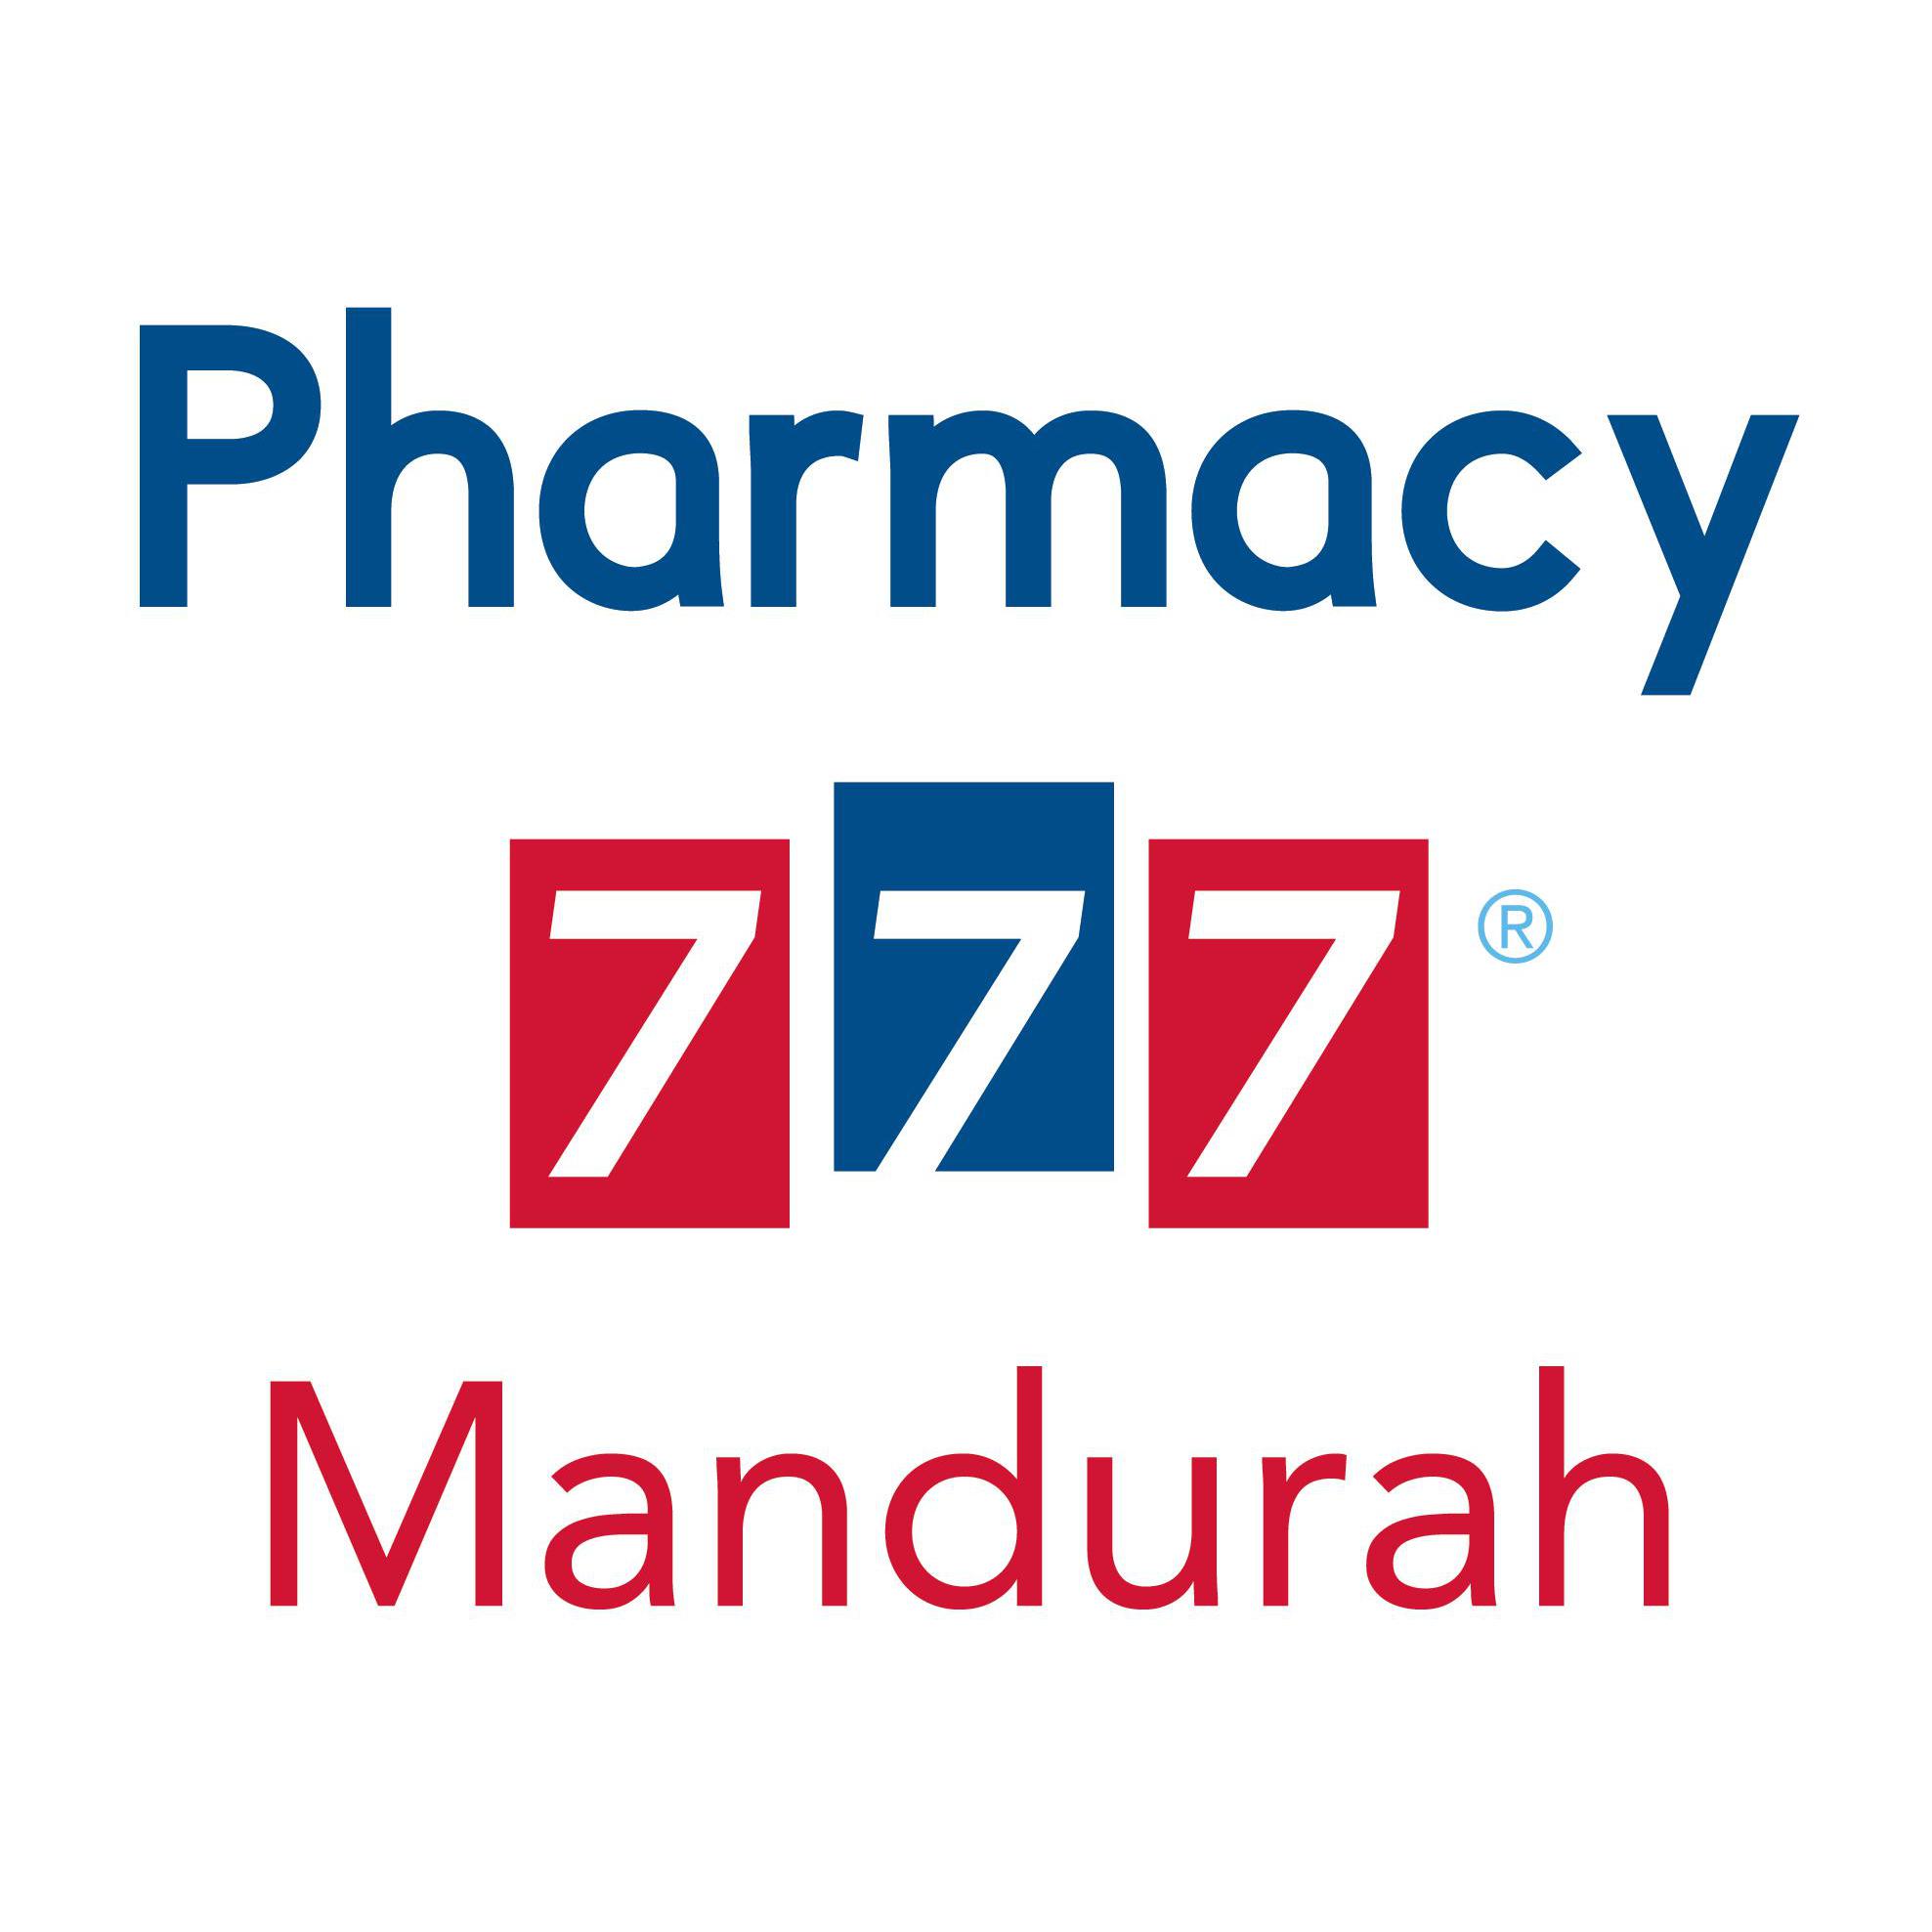 Pharmacy 777 Mandurah - Mandurah, WA 6210 - (08) 9534 9000 | ShowMeLocal.com